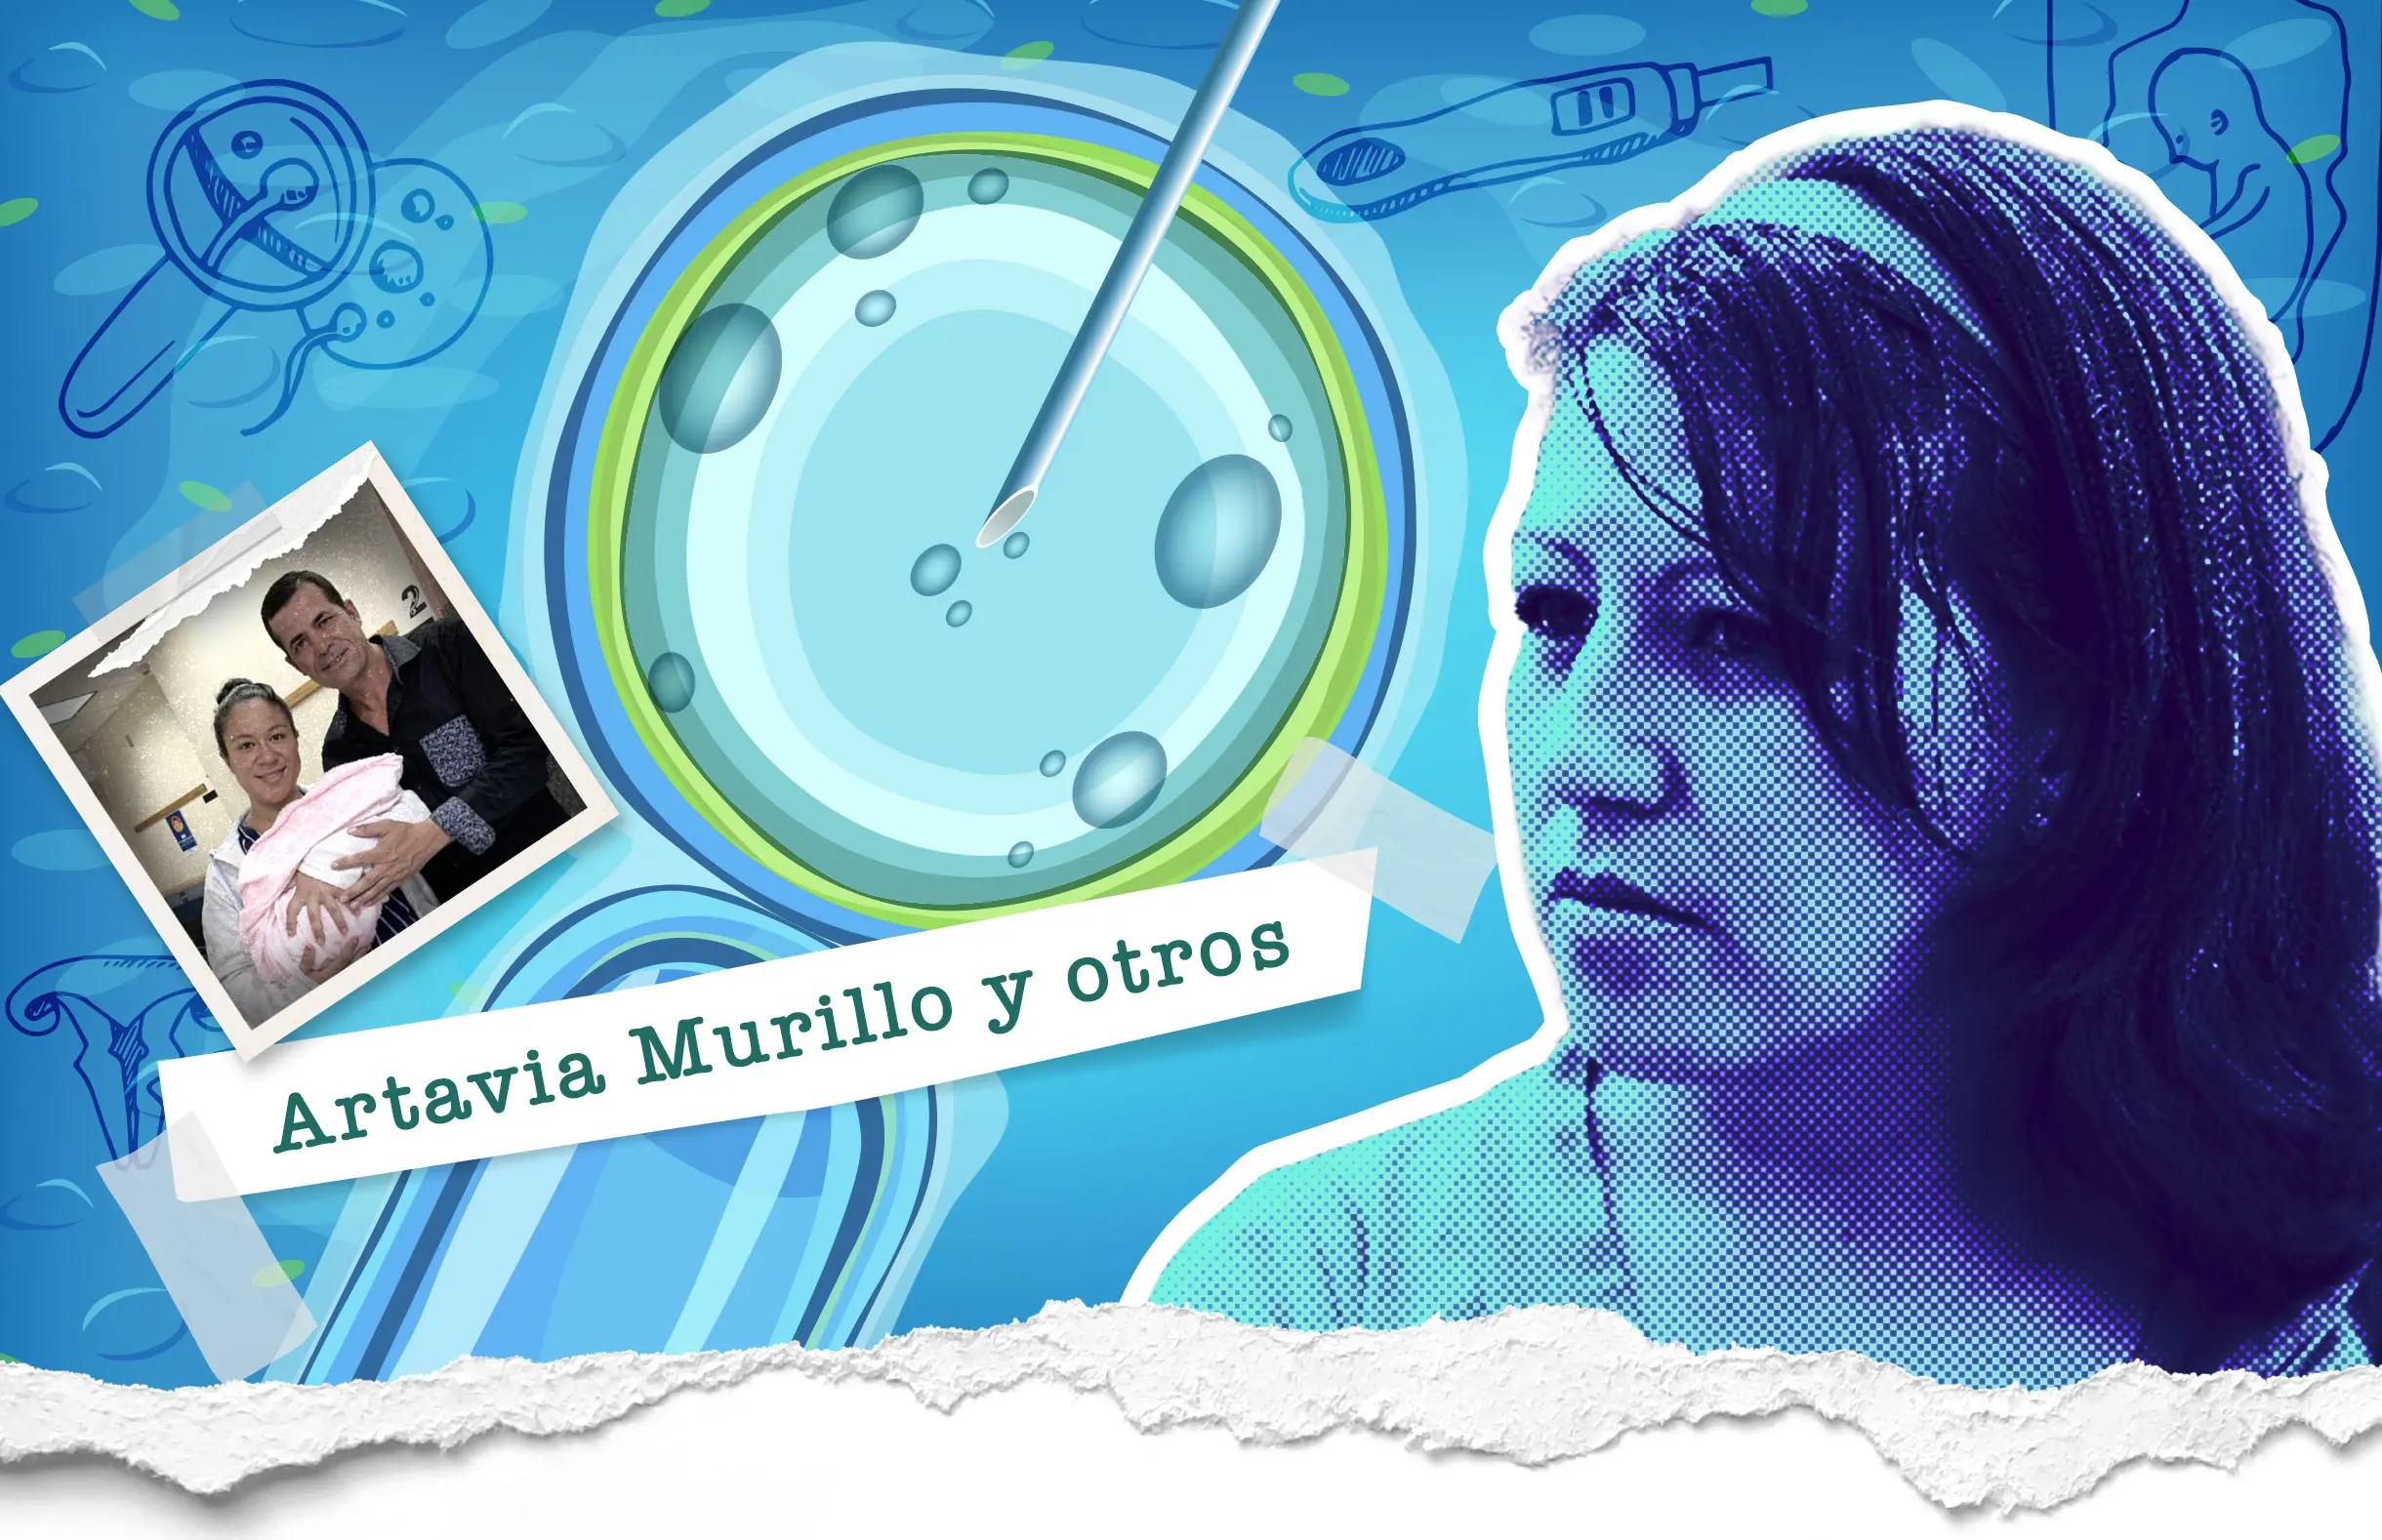 artavia murillo vs costa rica resumen oficial - Cuánto cuesta una fertilización in vitro en Costa Rica